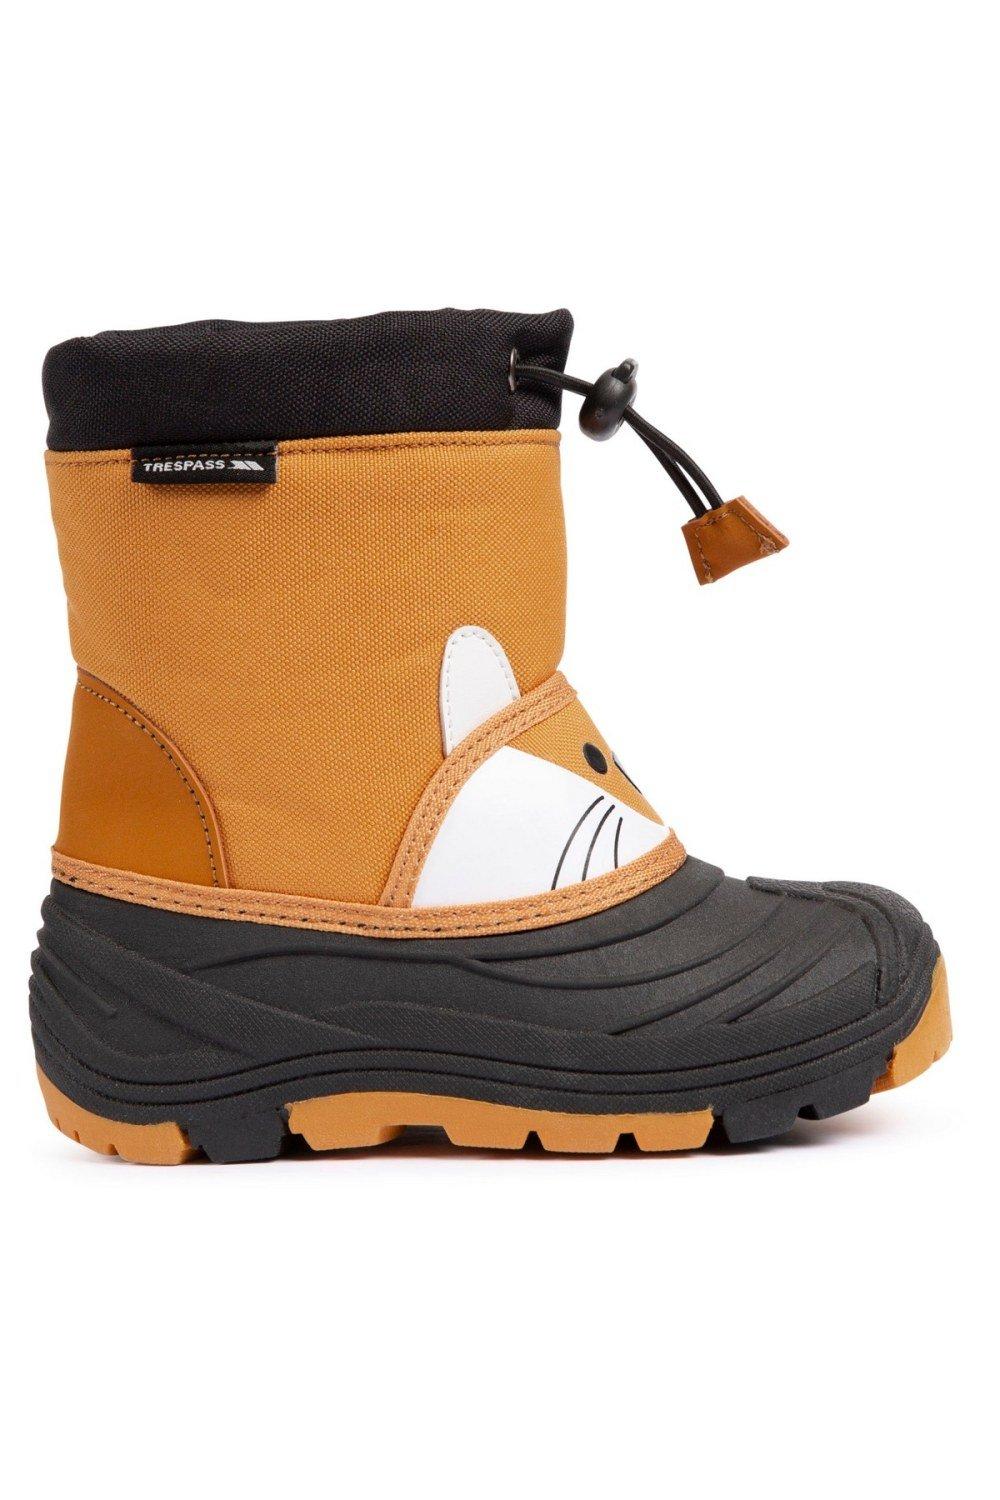 цена Зимние ботинки Бодхи Trespass, коричневый